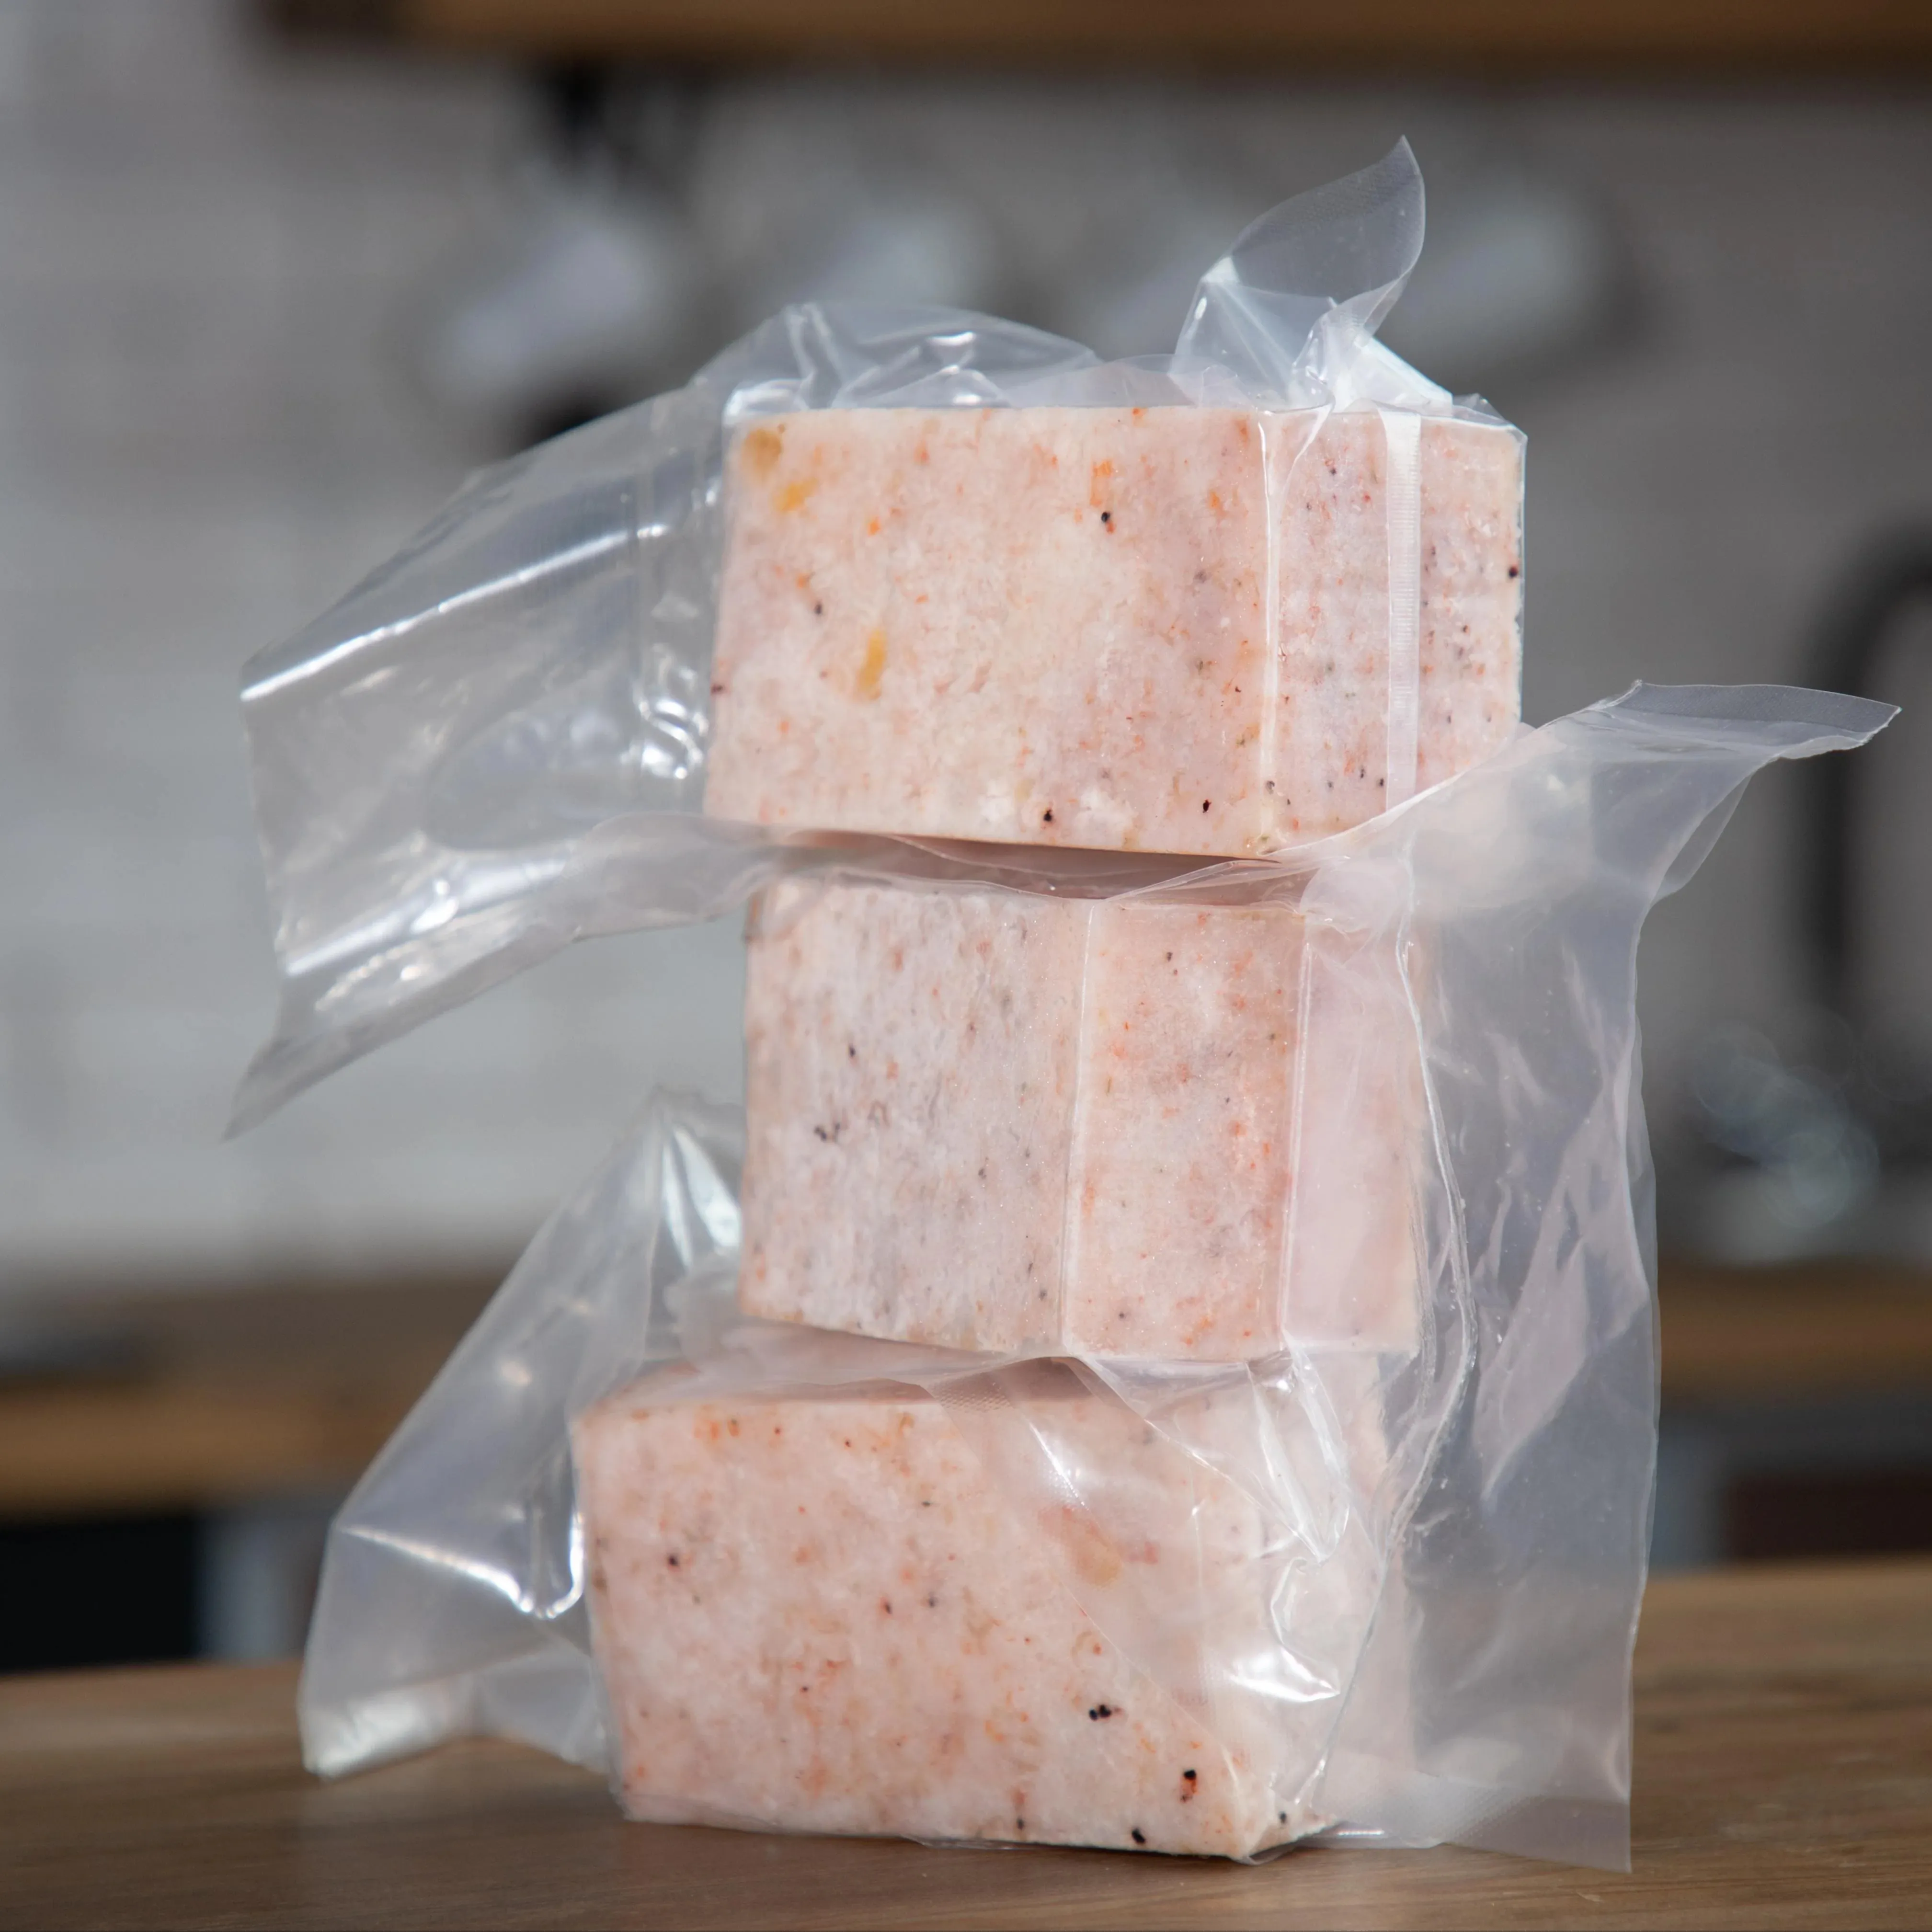 ブロック冷凍南極オキアミ肉タンパク質 & 栄養素豊富なバルク冷凍オキアミ肉米国からの卸売価格でバルクで販売